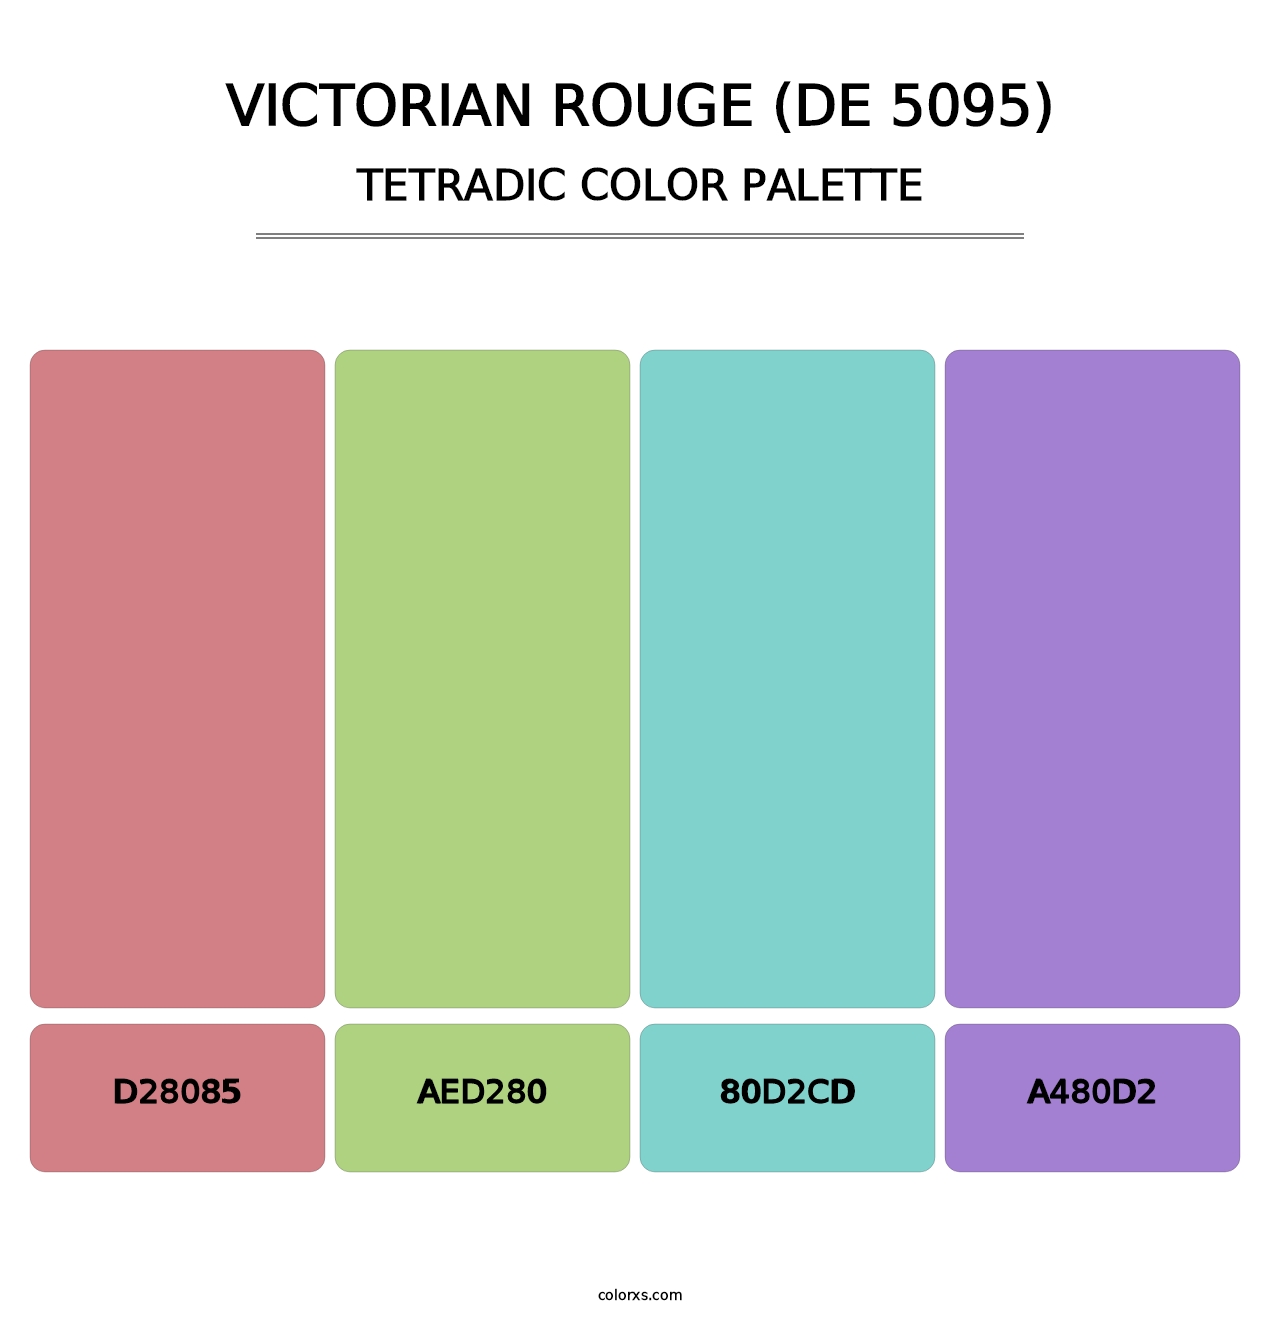 Victorian Rouge (DE 5095) - Tetradic Color Palette